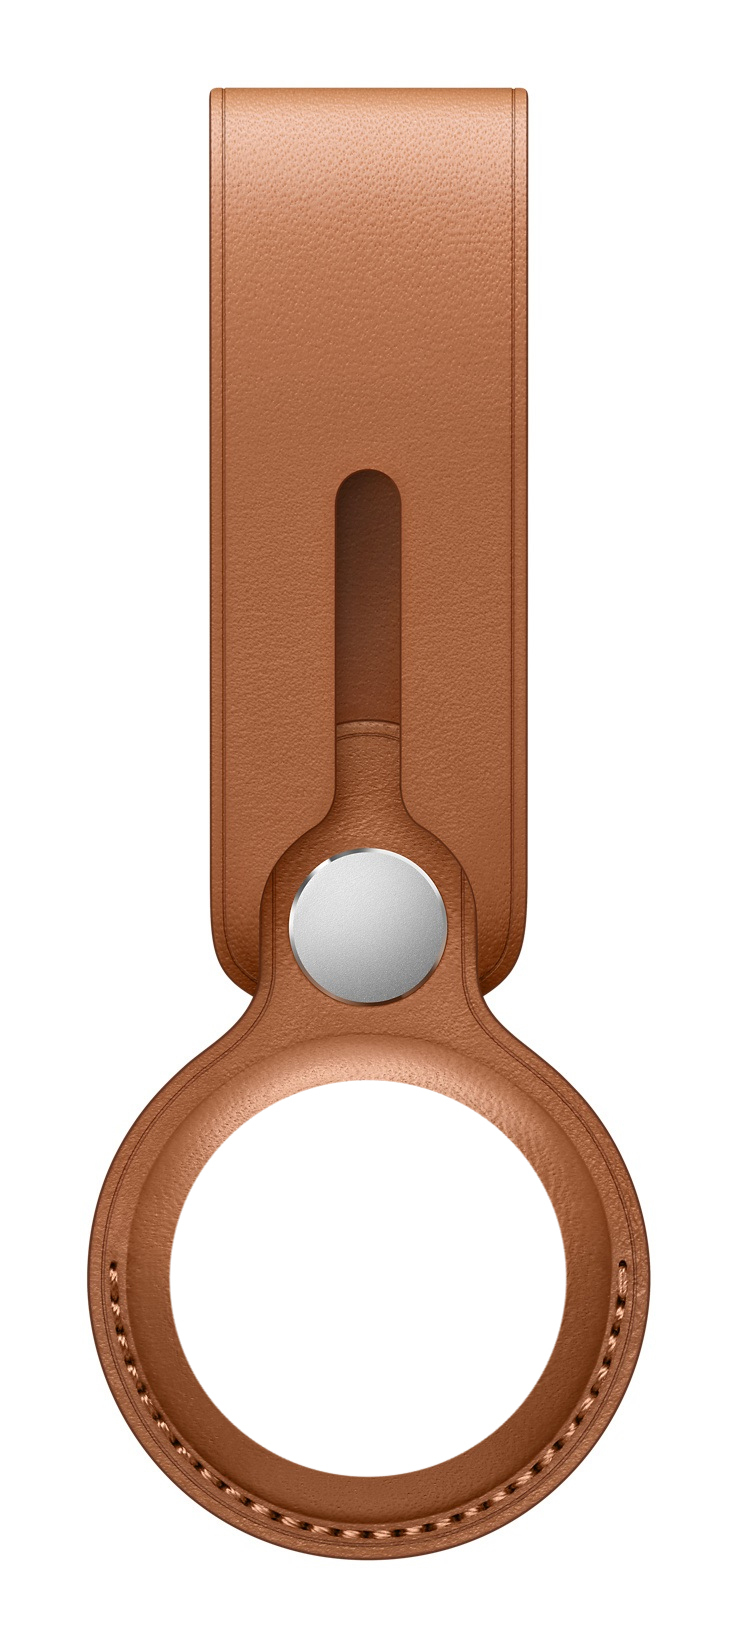 Apple MX4A2ZM/A Tilbehør til nøglefinder Key finder loop Brun, 204 in distributor/wholesale stock for resellers to sell - In The Channel